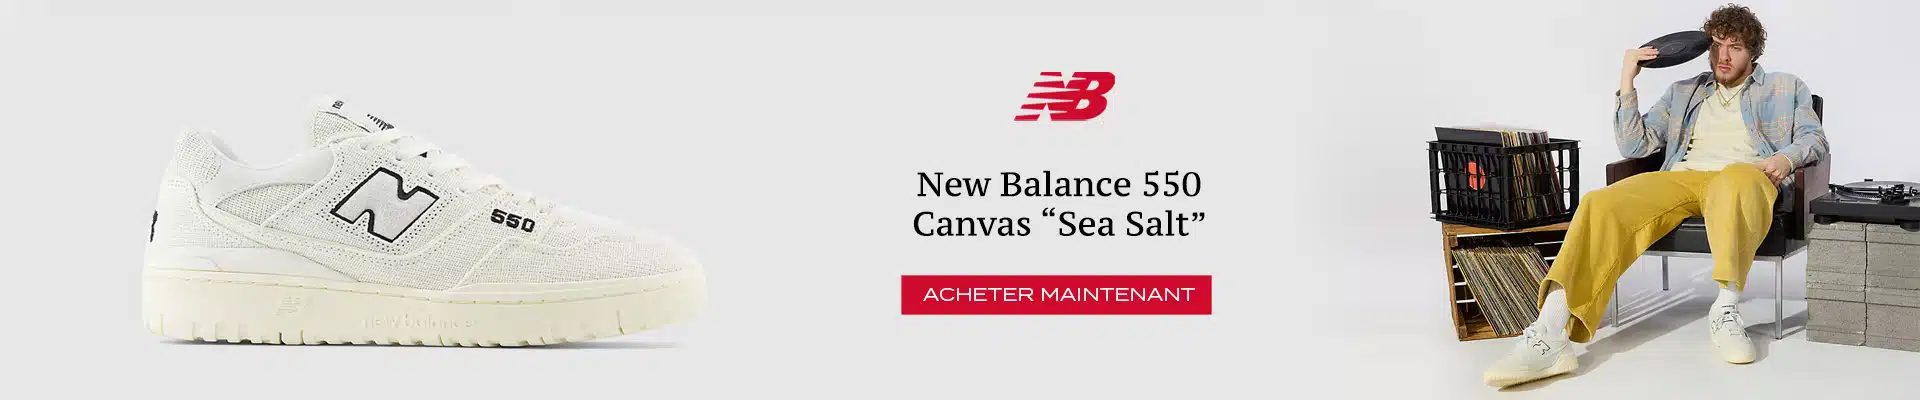 New Balance 550 Sea Salt